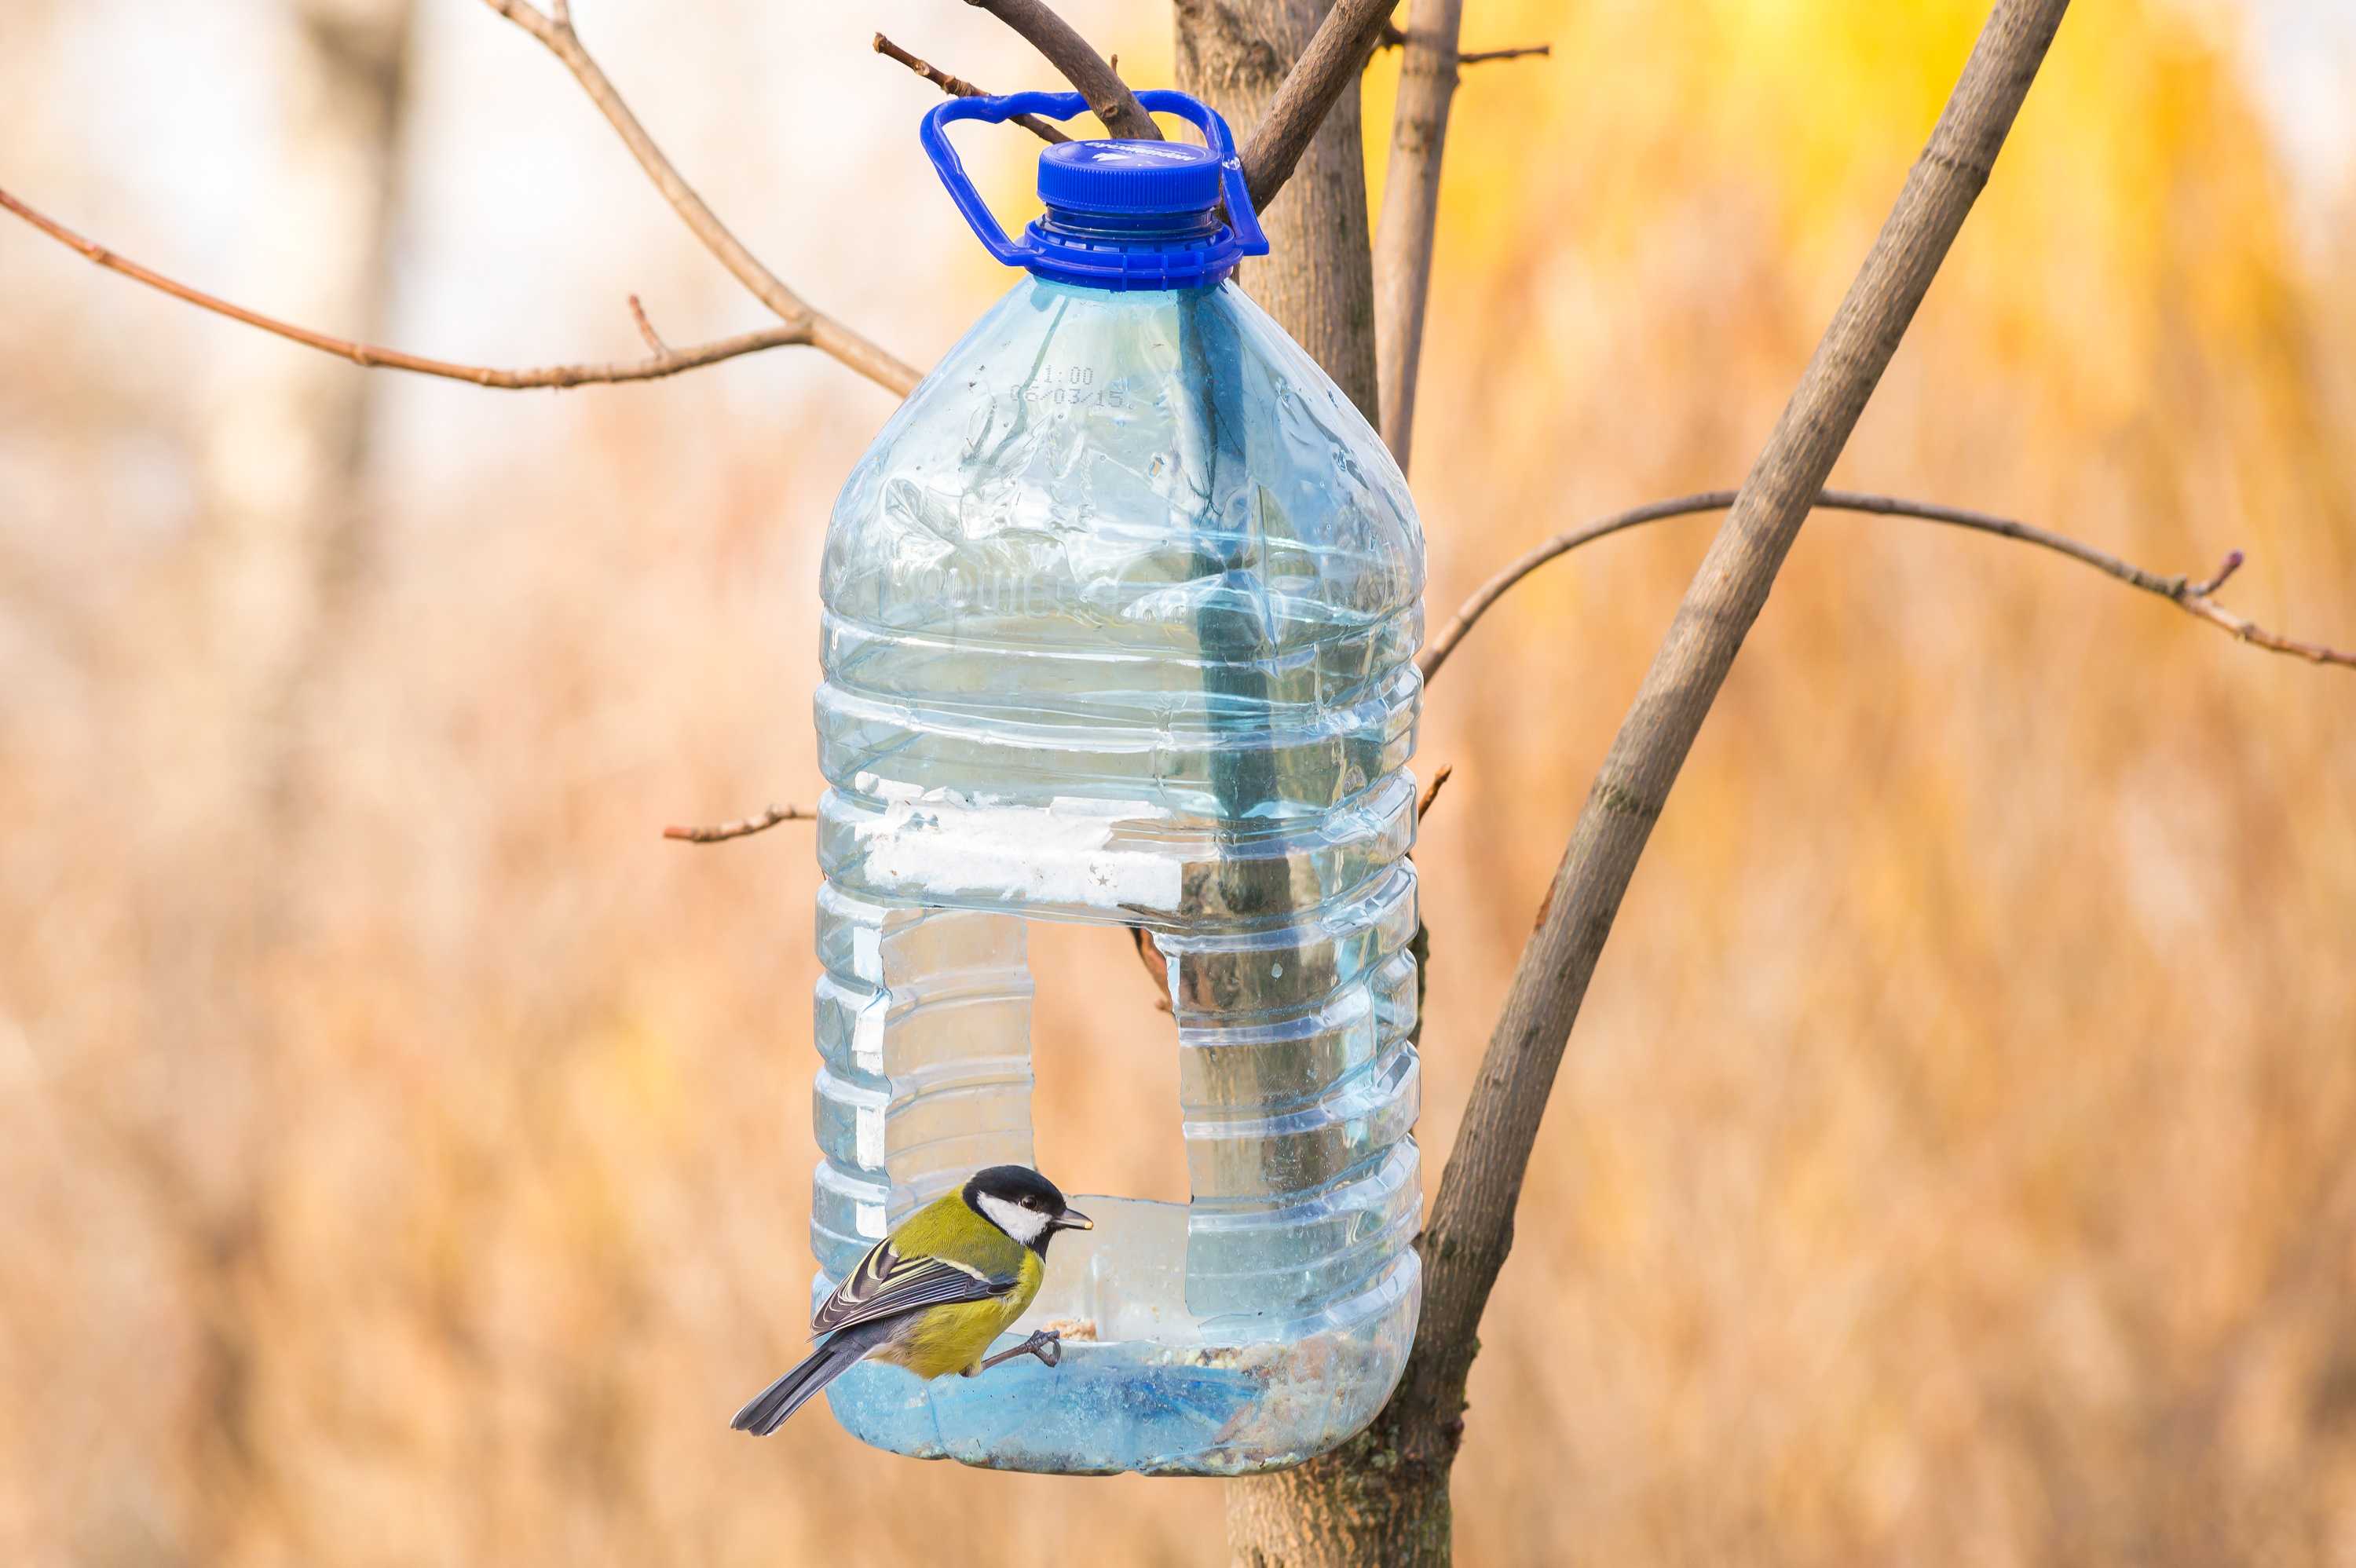 Самодельная кормушка для птиц из пластиковой бутылки.